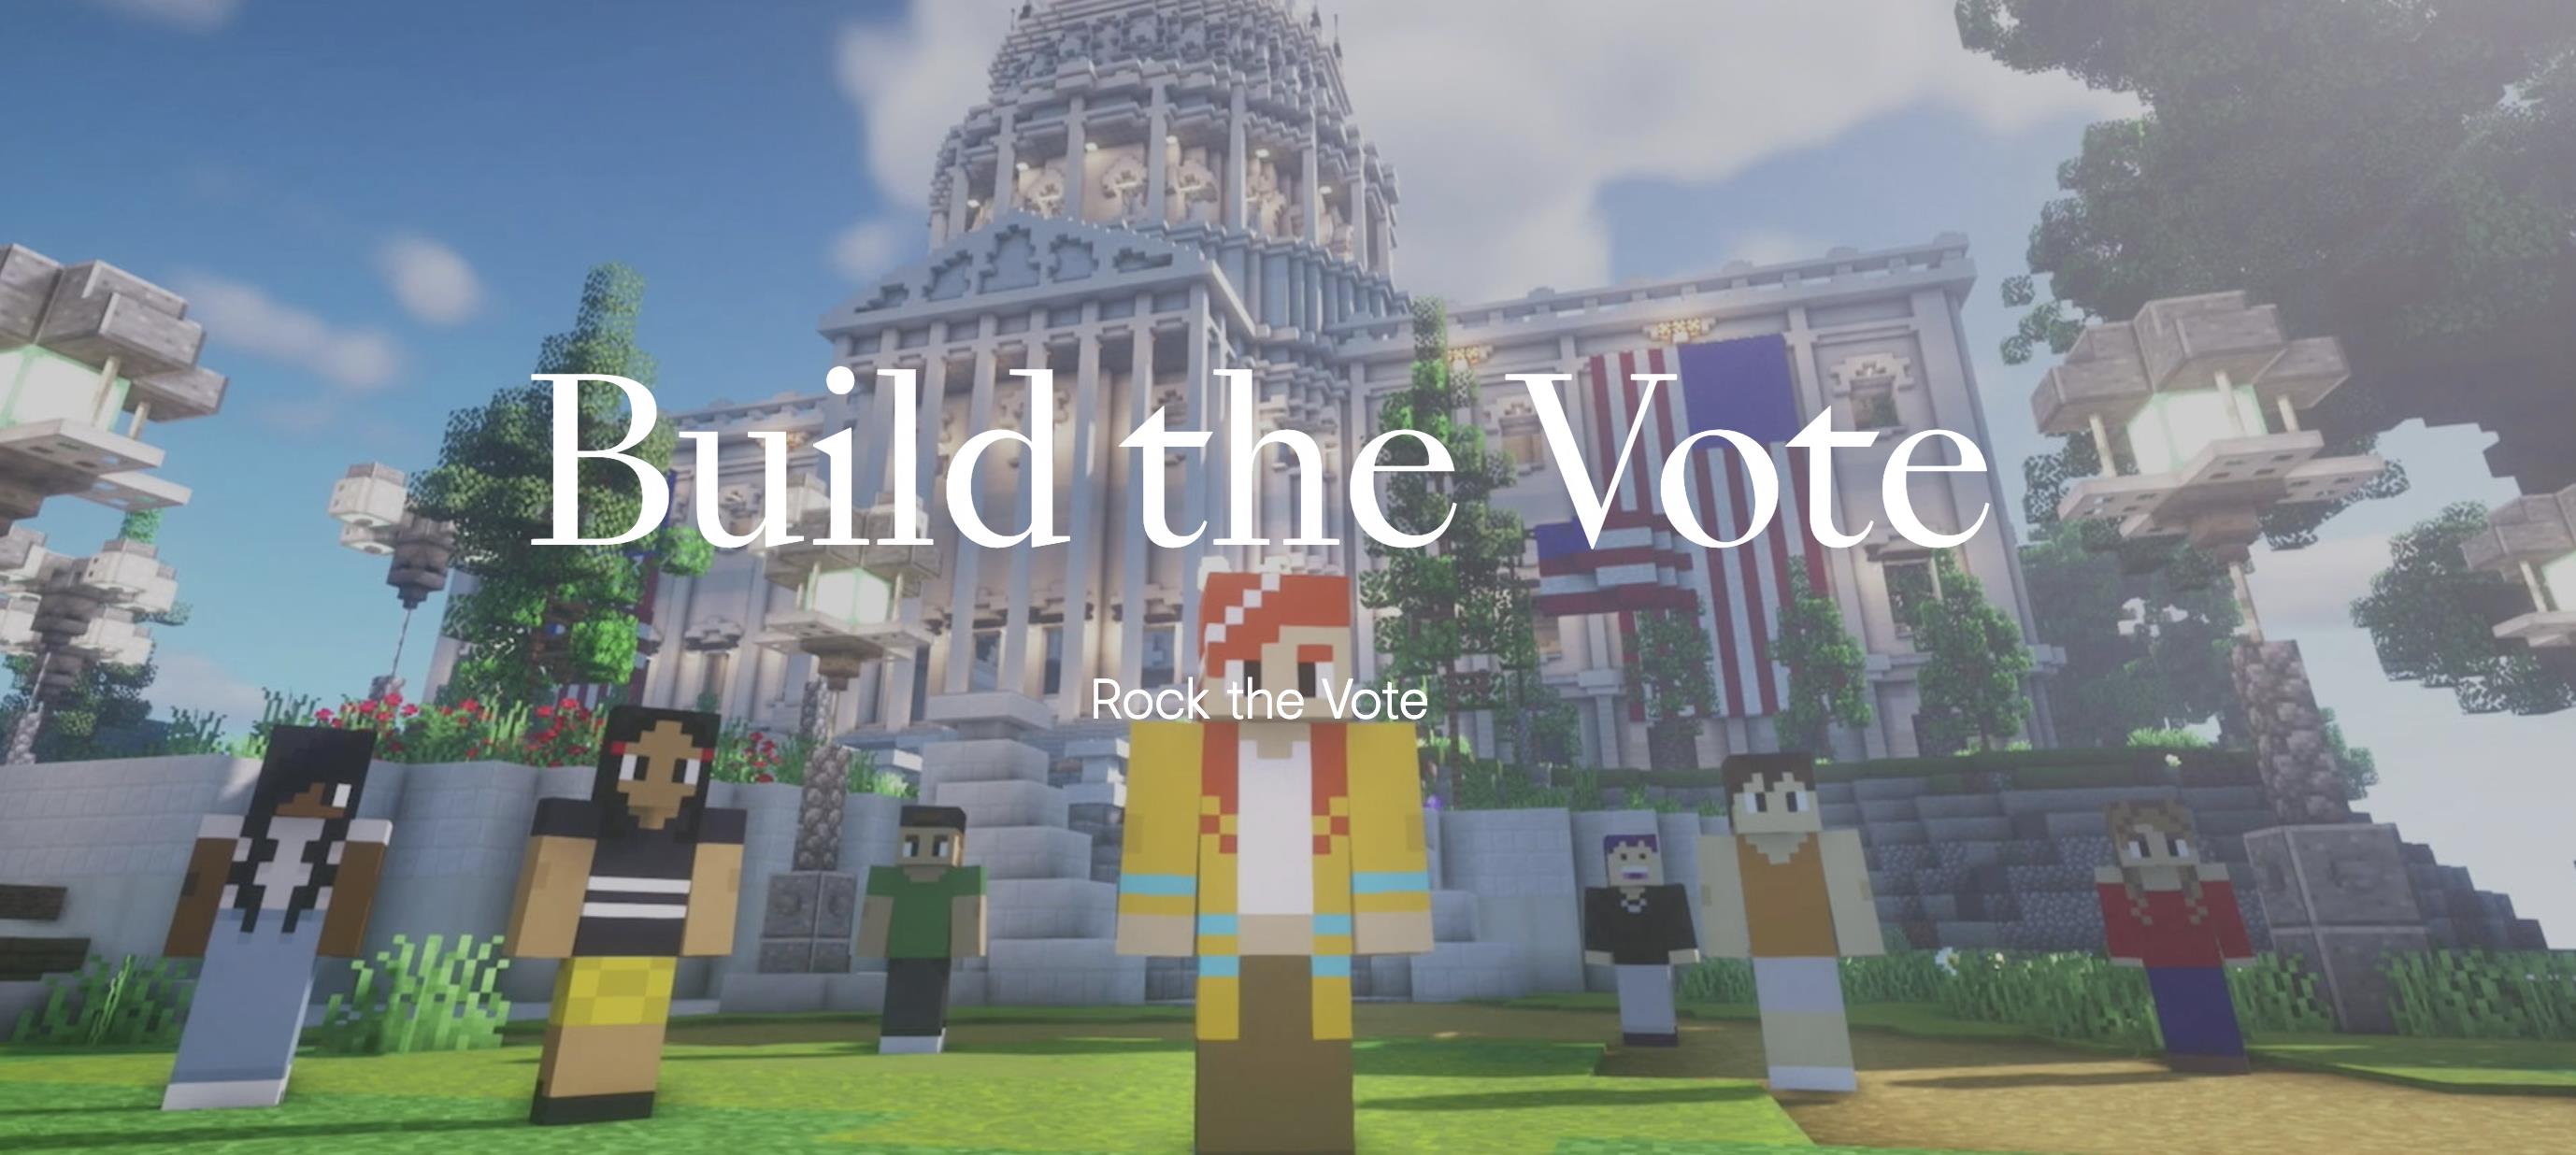 Rock the Vote - "Build the Vote "Campaign